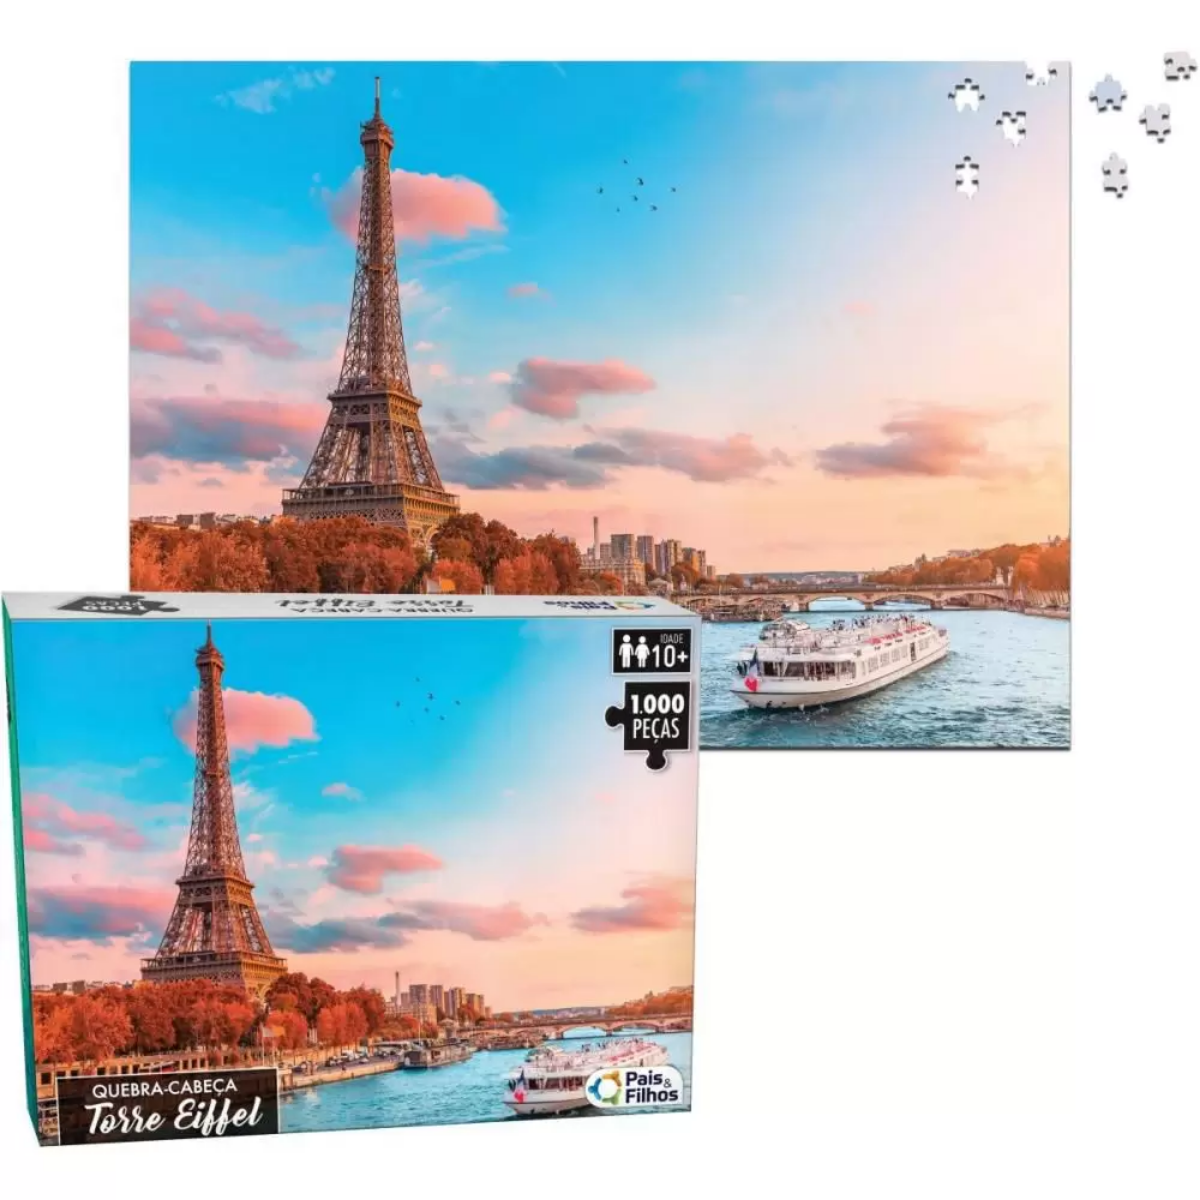 Quebra Cabeça de 1000 peças brinquedo cartonado Torre Eiffel Paris 63cm x 45,5cmm